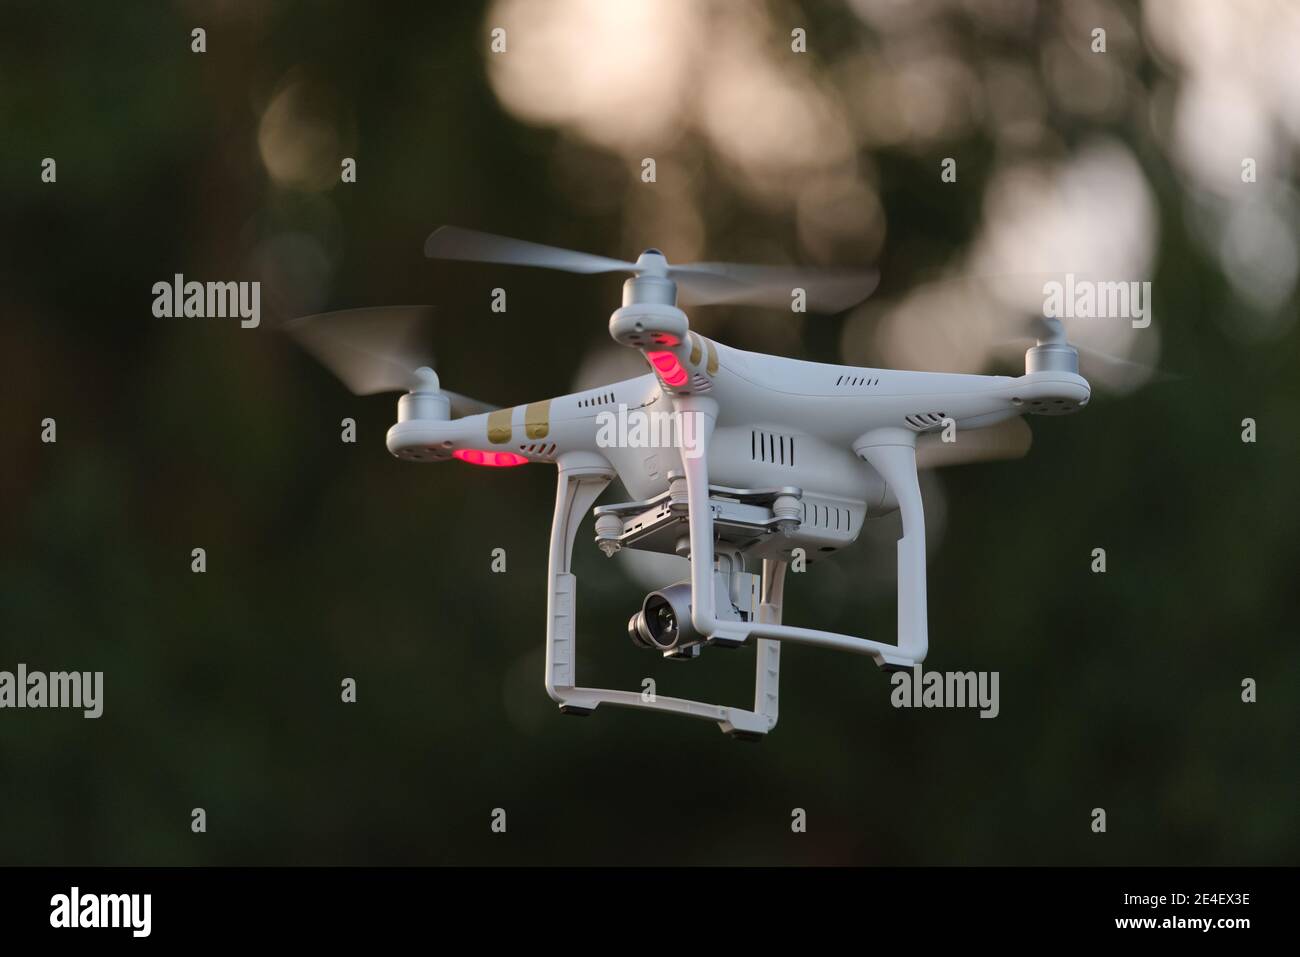 14 - drone blanc transportant une caméra sur une nacelle regarde à gauche. Beaucoup d'espace de copie grâce à la mise au point sélective et à l'arrière-plan sombre. Banque D'Images